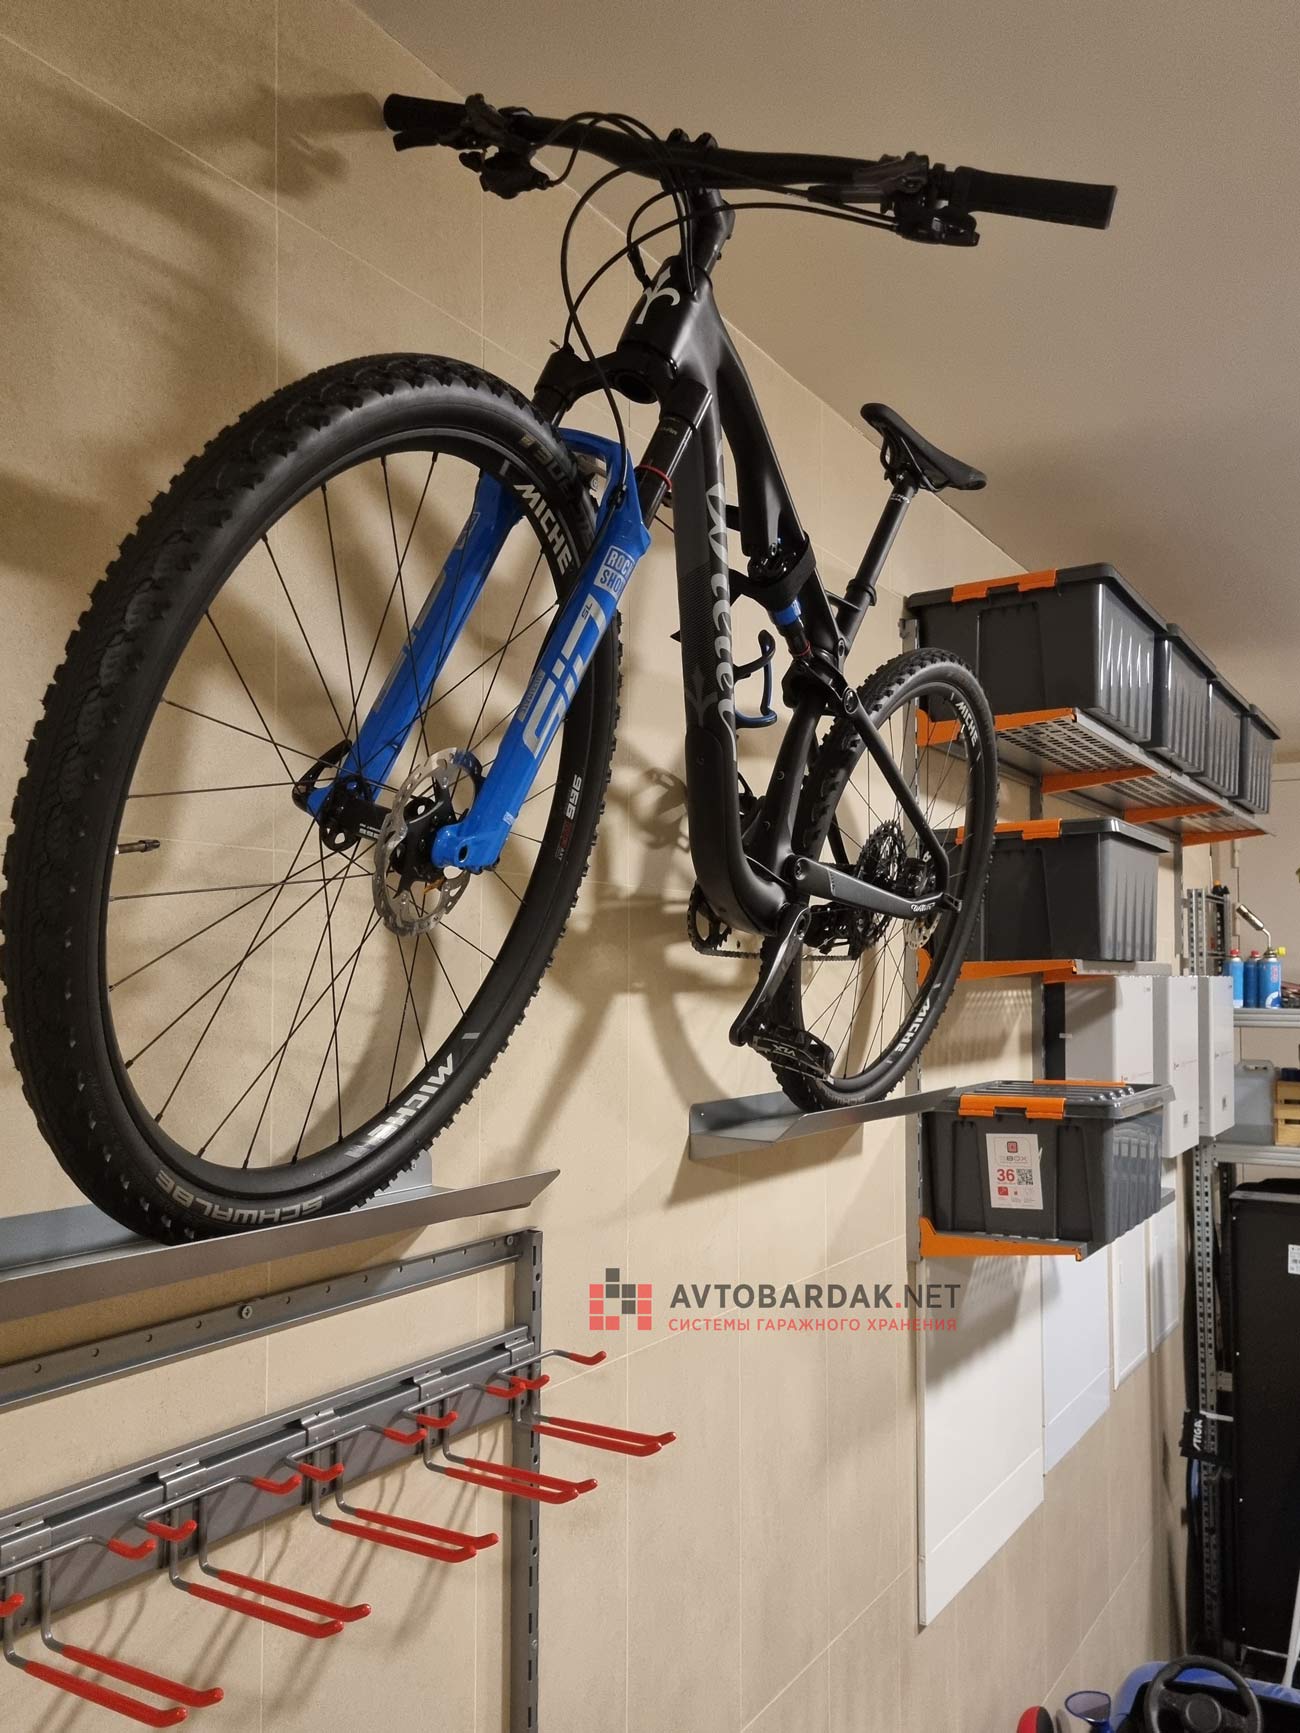 Оборудование для ремонта и хранения для велосипеда купить в Минске, цены